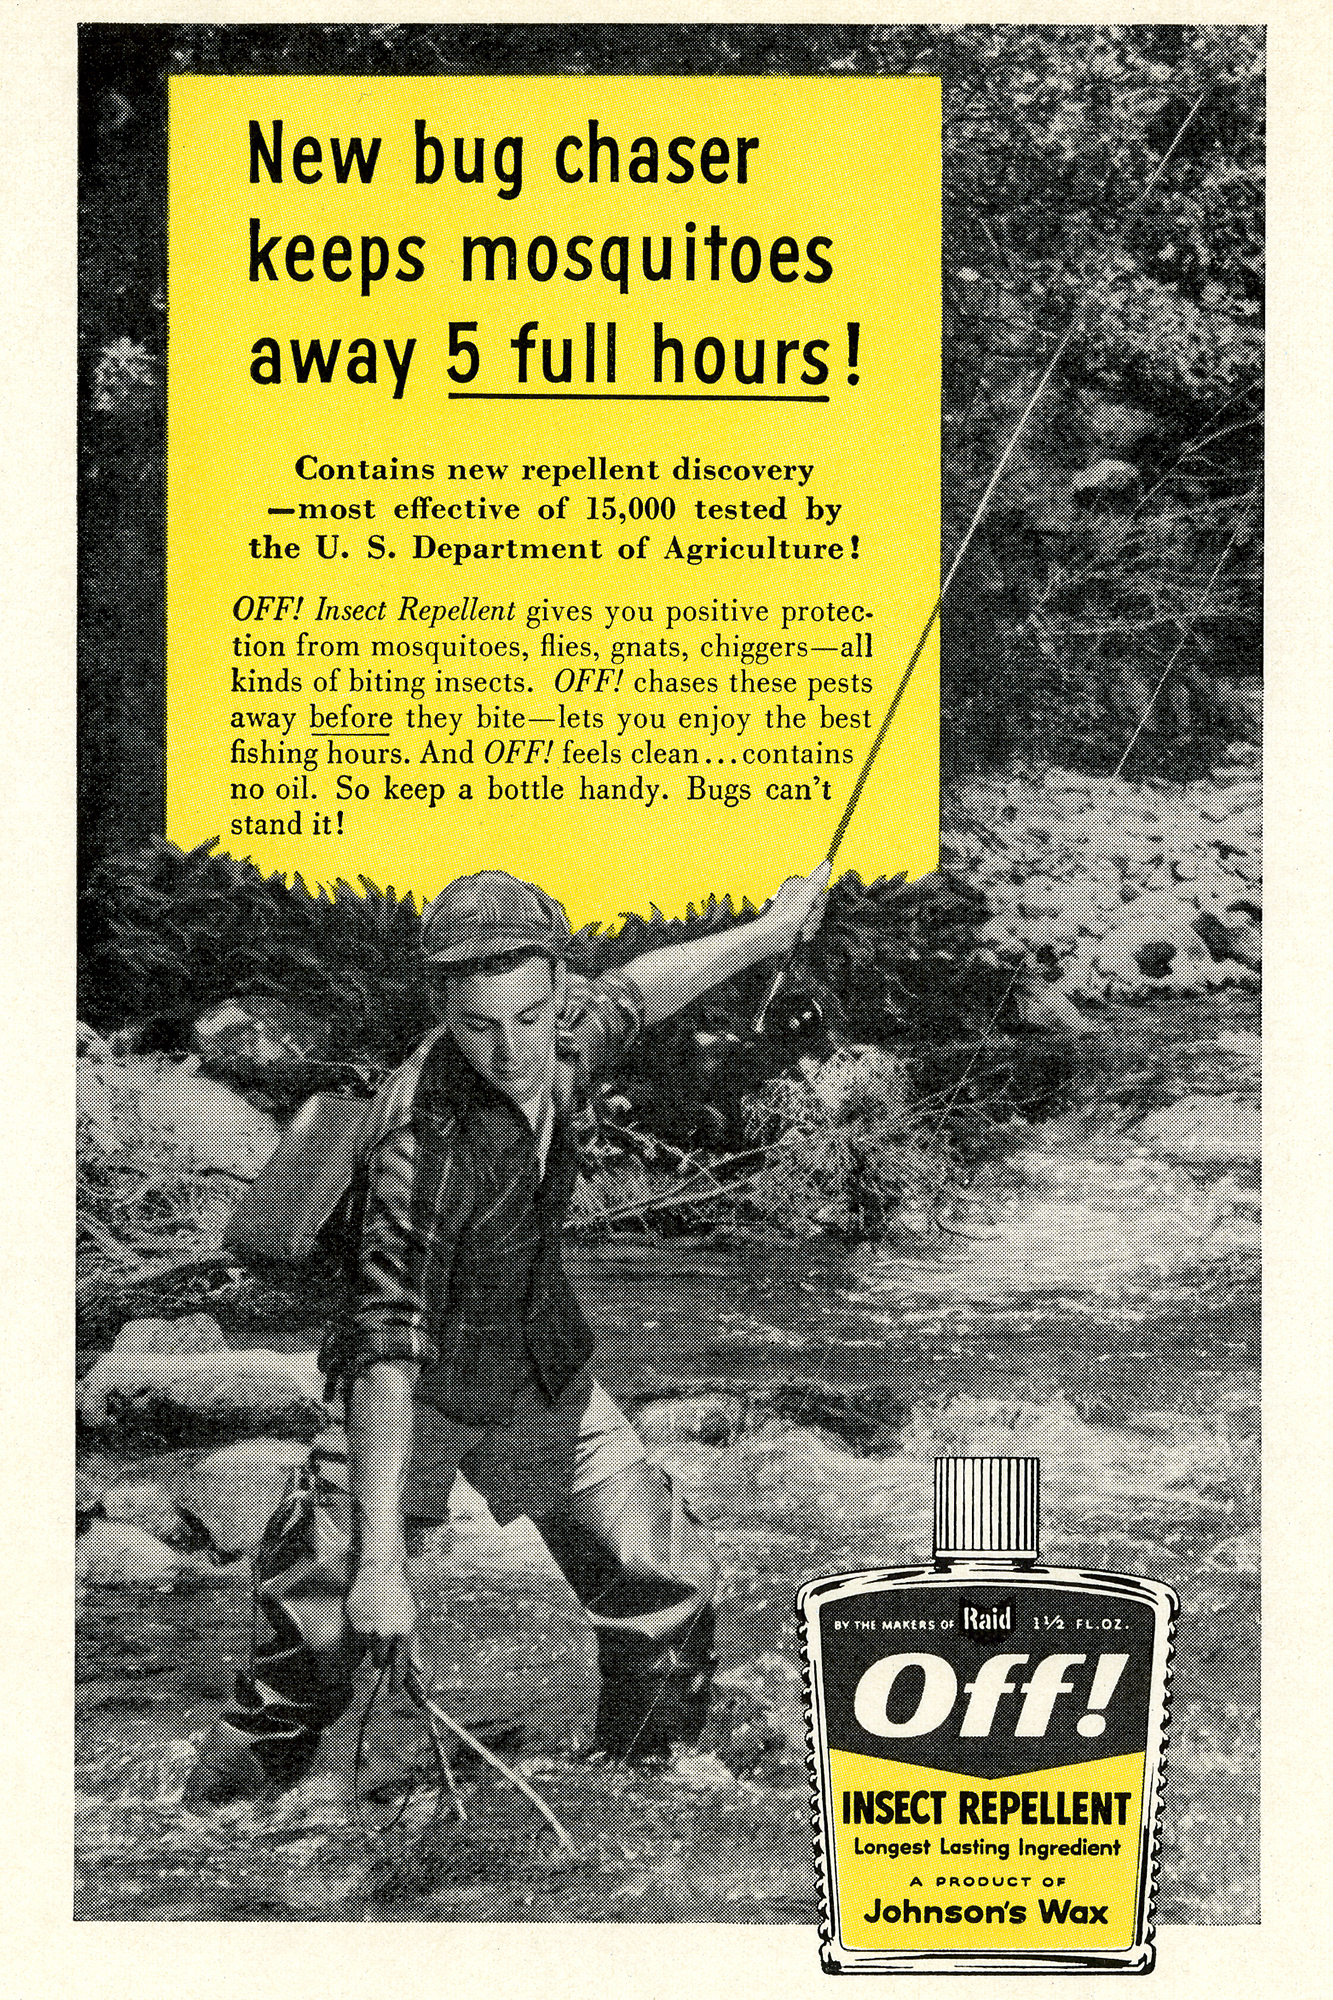 Eine Werbeanzeige von Johnson’s Wax für das Mückenspray OFF! aus dem Jahr 1957